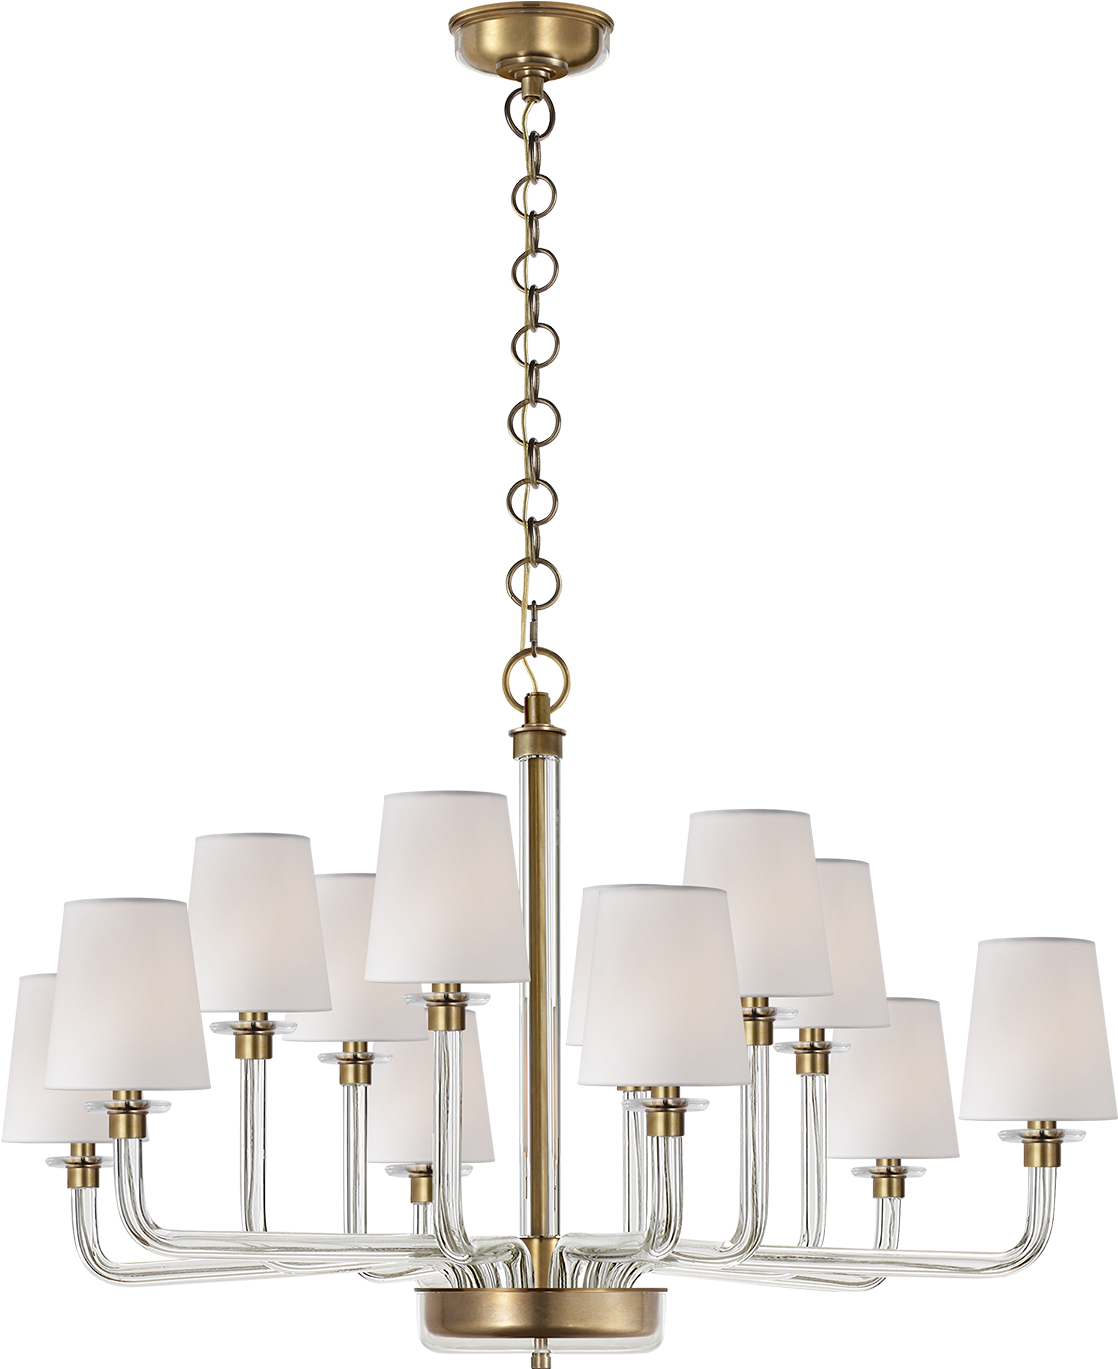 Elegant Brass Chandelier Lighting Fixture PNG image